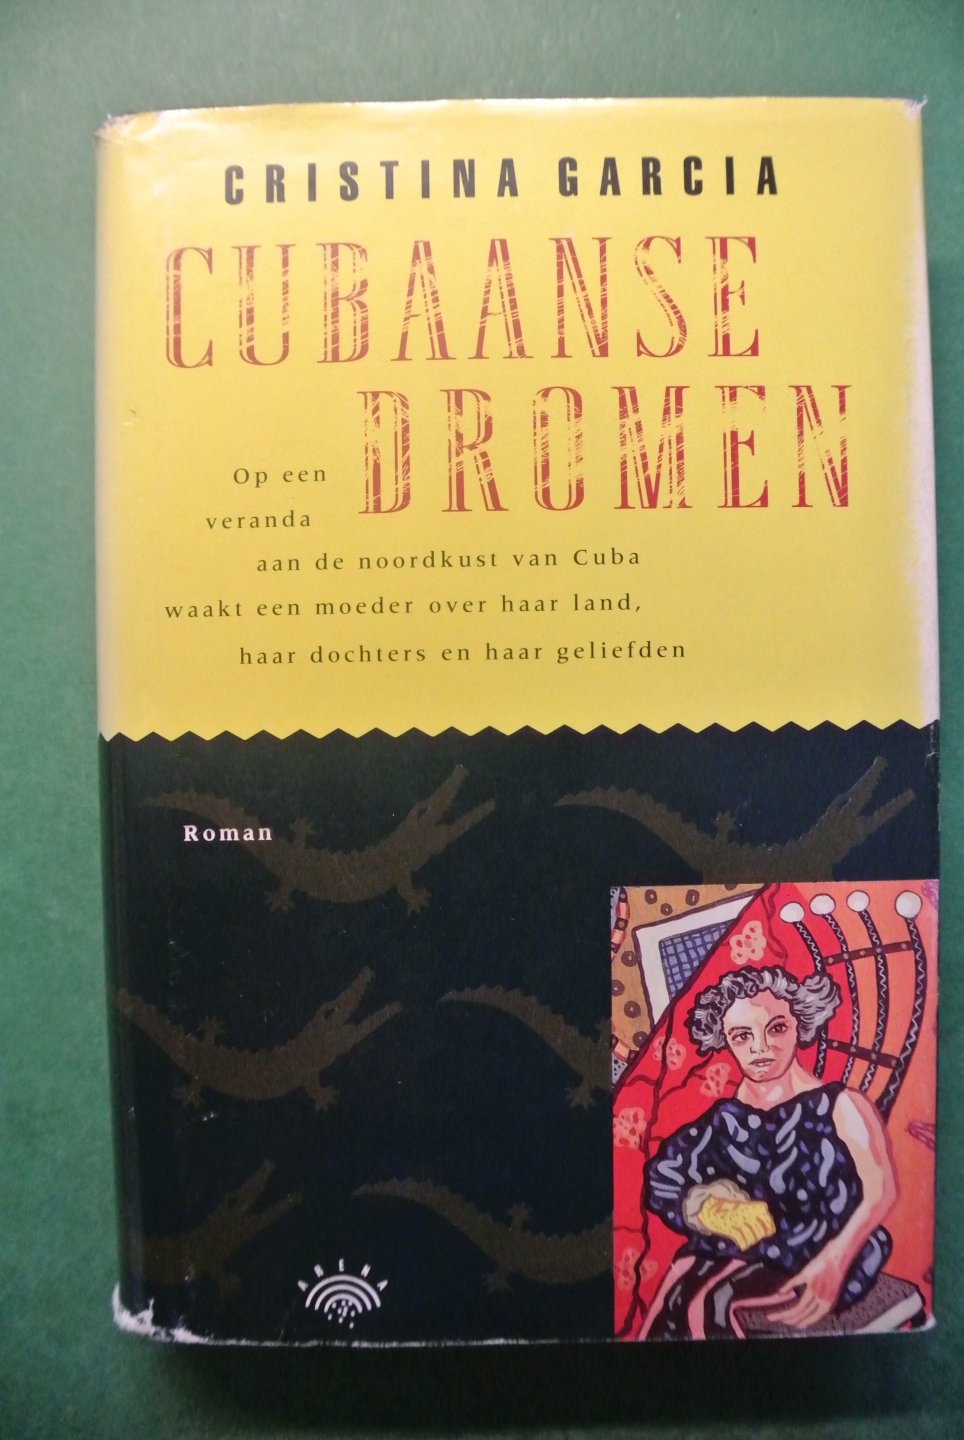 Garcia, Cristina - CUBAANSE DROMEN. Op een veranda aan de noodkust van Cuba waakt een moeder over haar land, haar dochters en haar geliefden